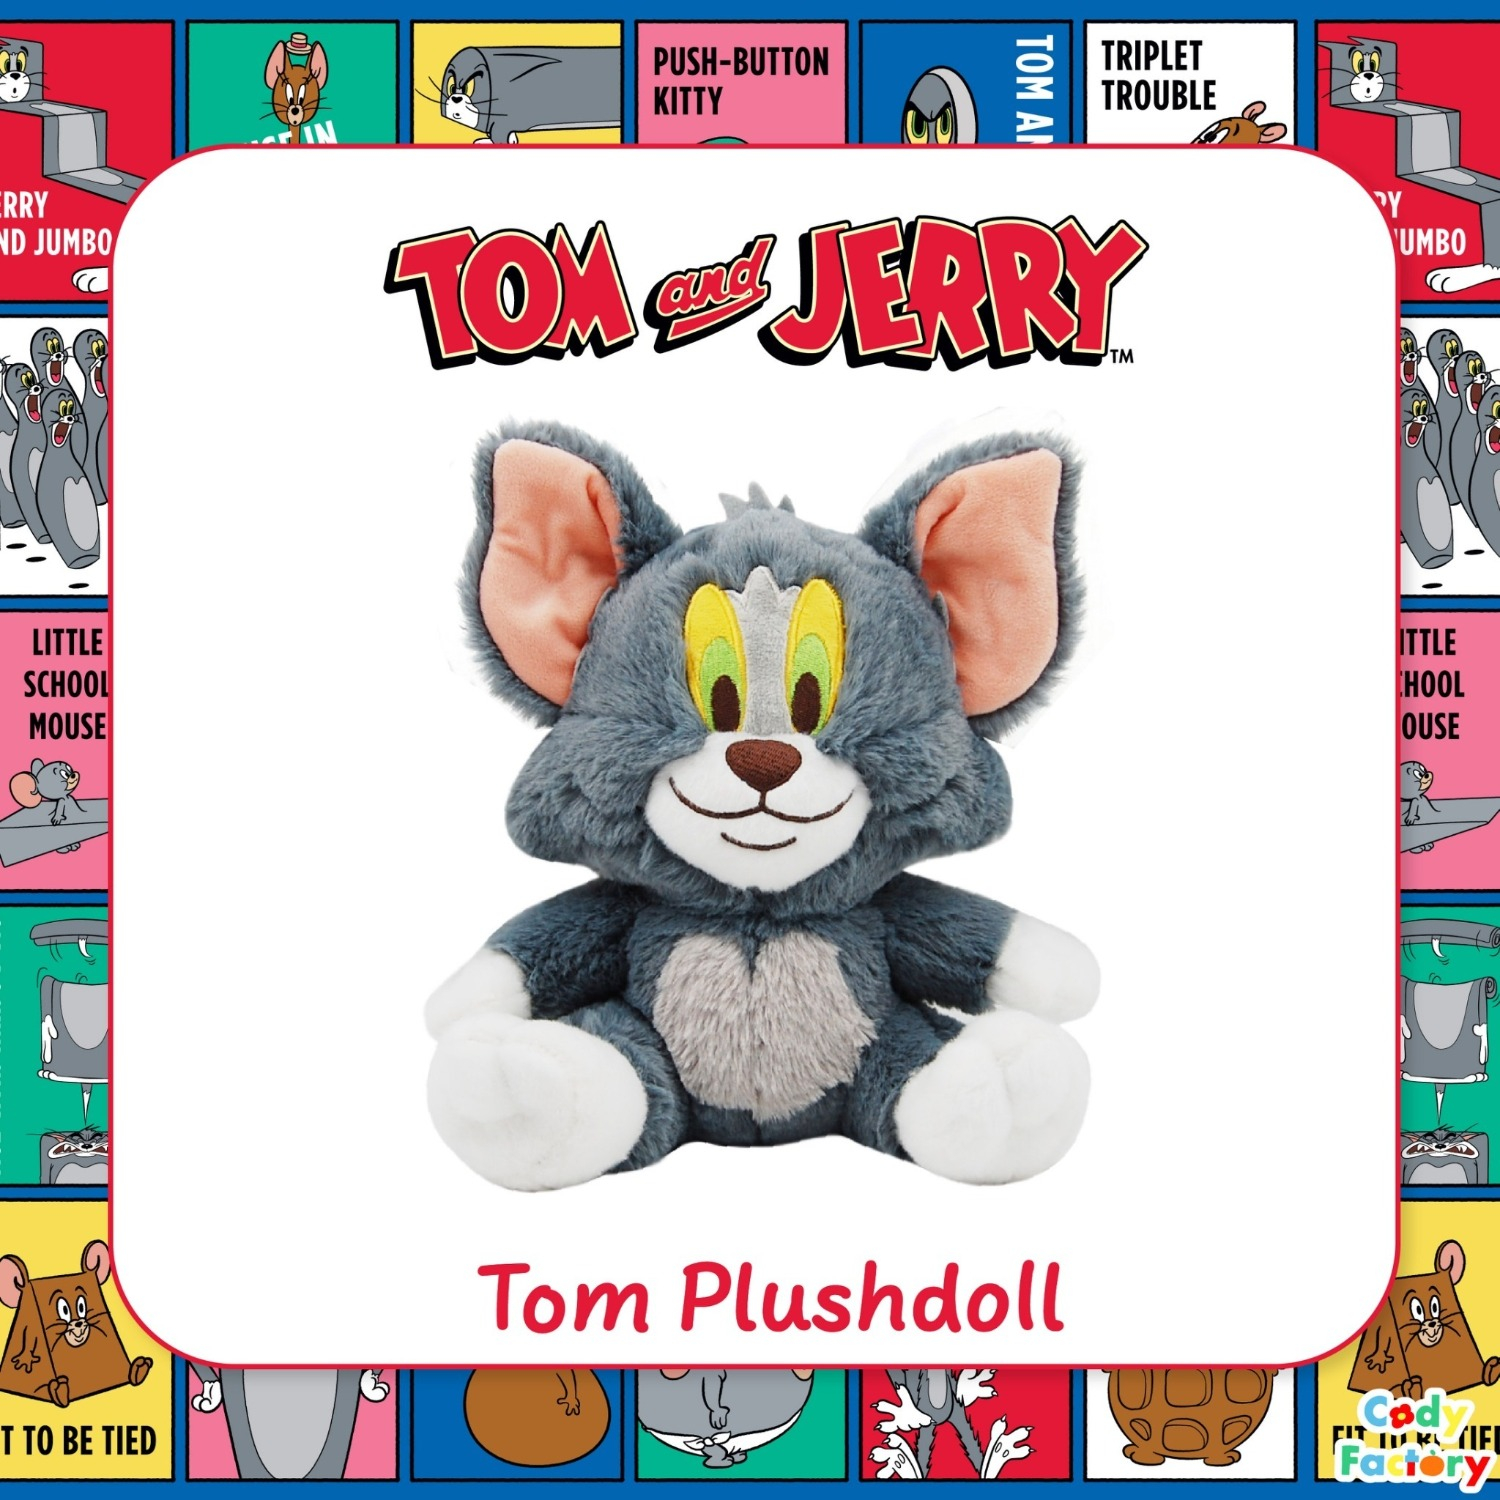  'Tom'| Plush Doll